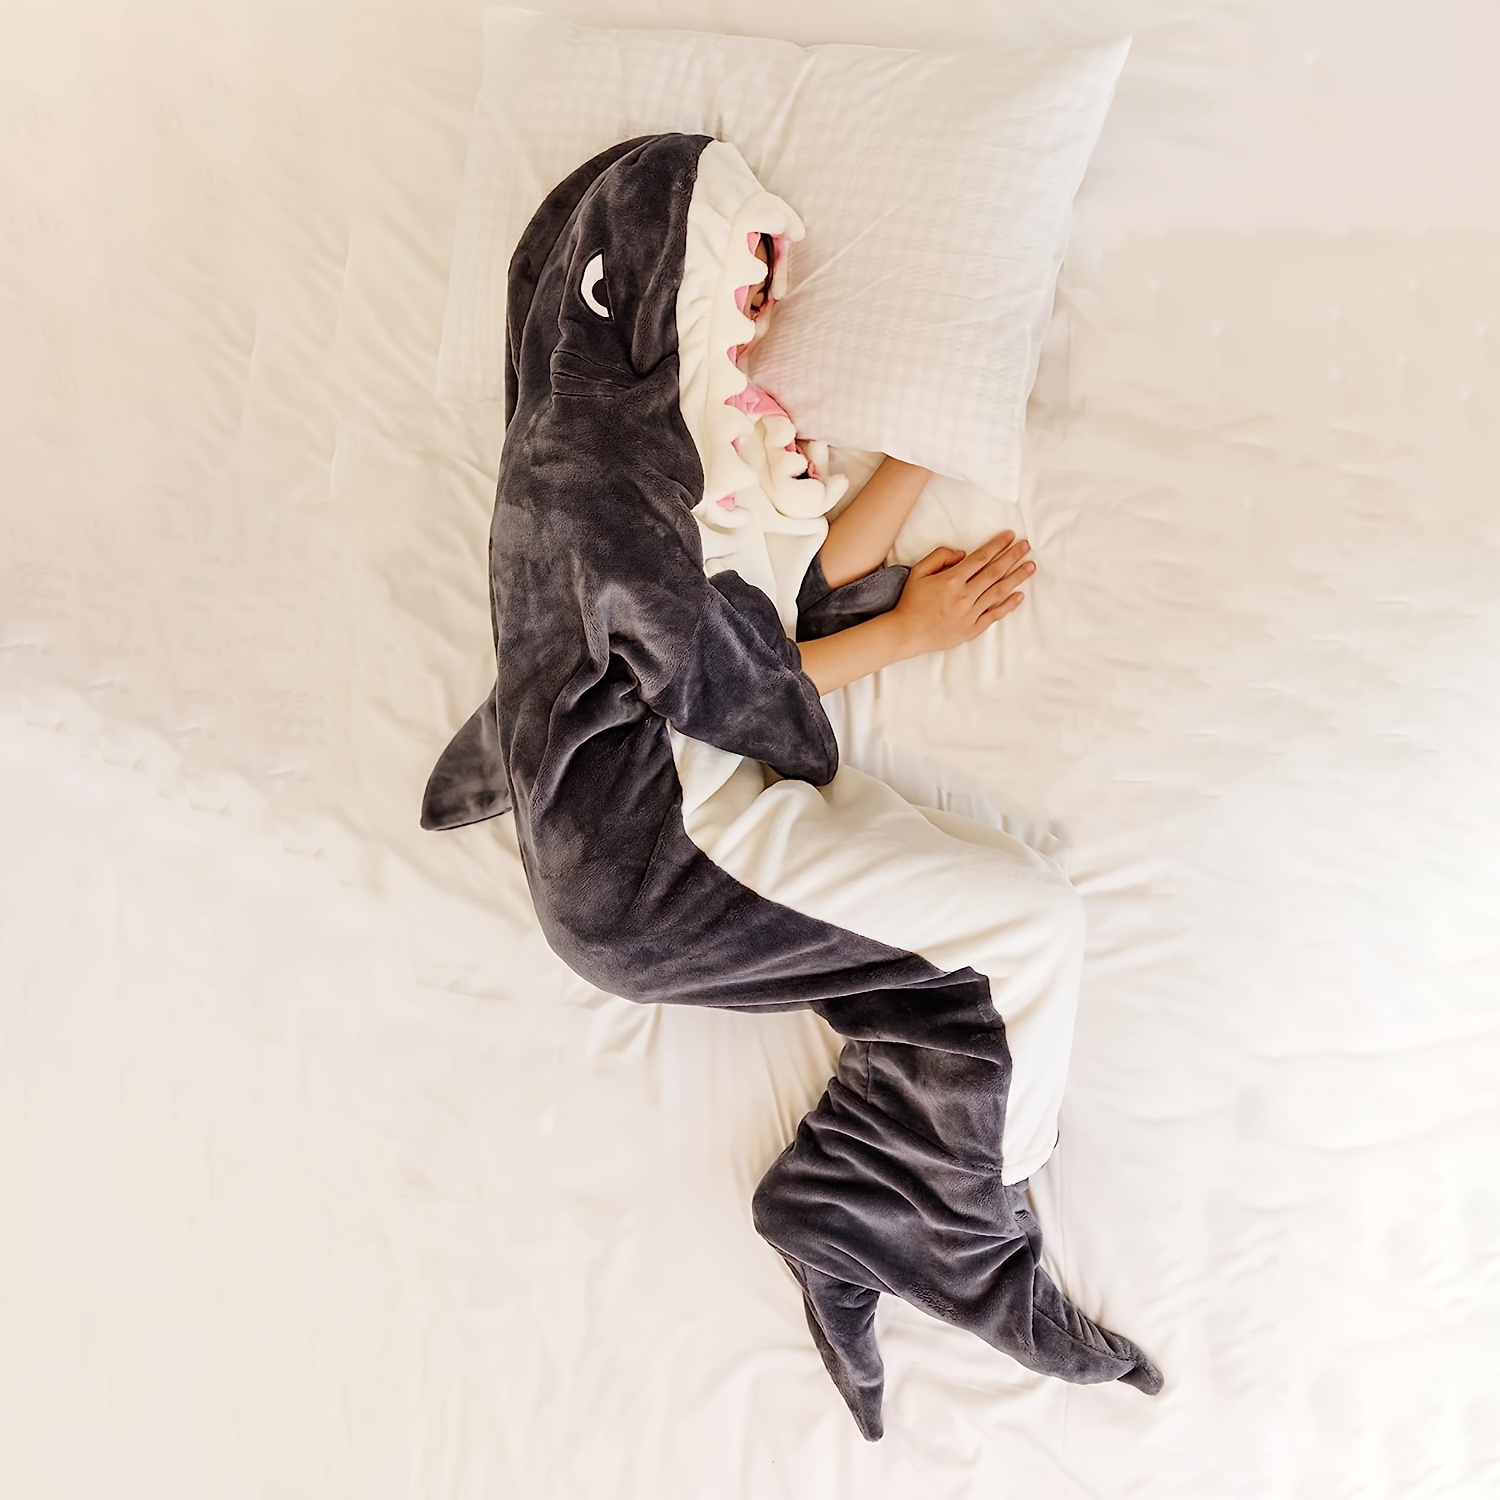 サメパジャマ サメ寝袋 サメブランケット 寝袋 着る毛布 着ぐるみ